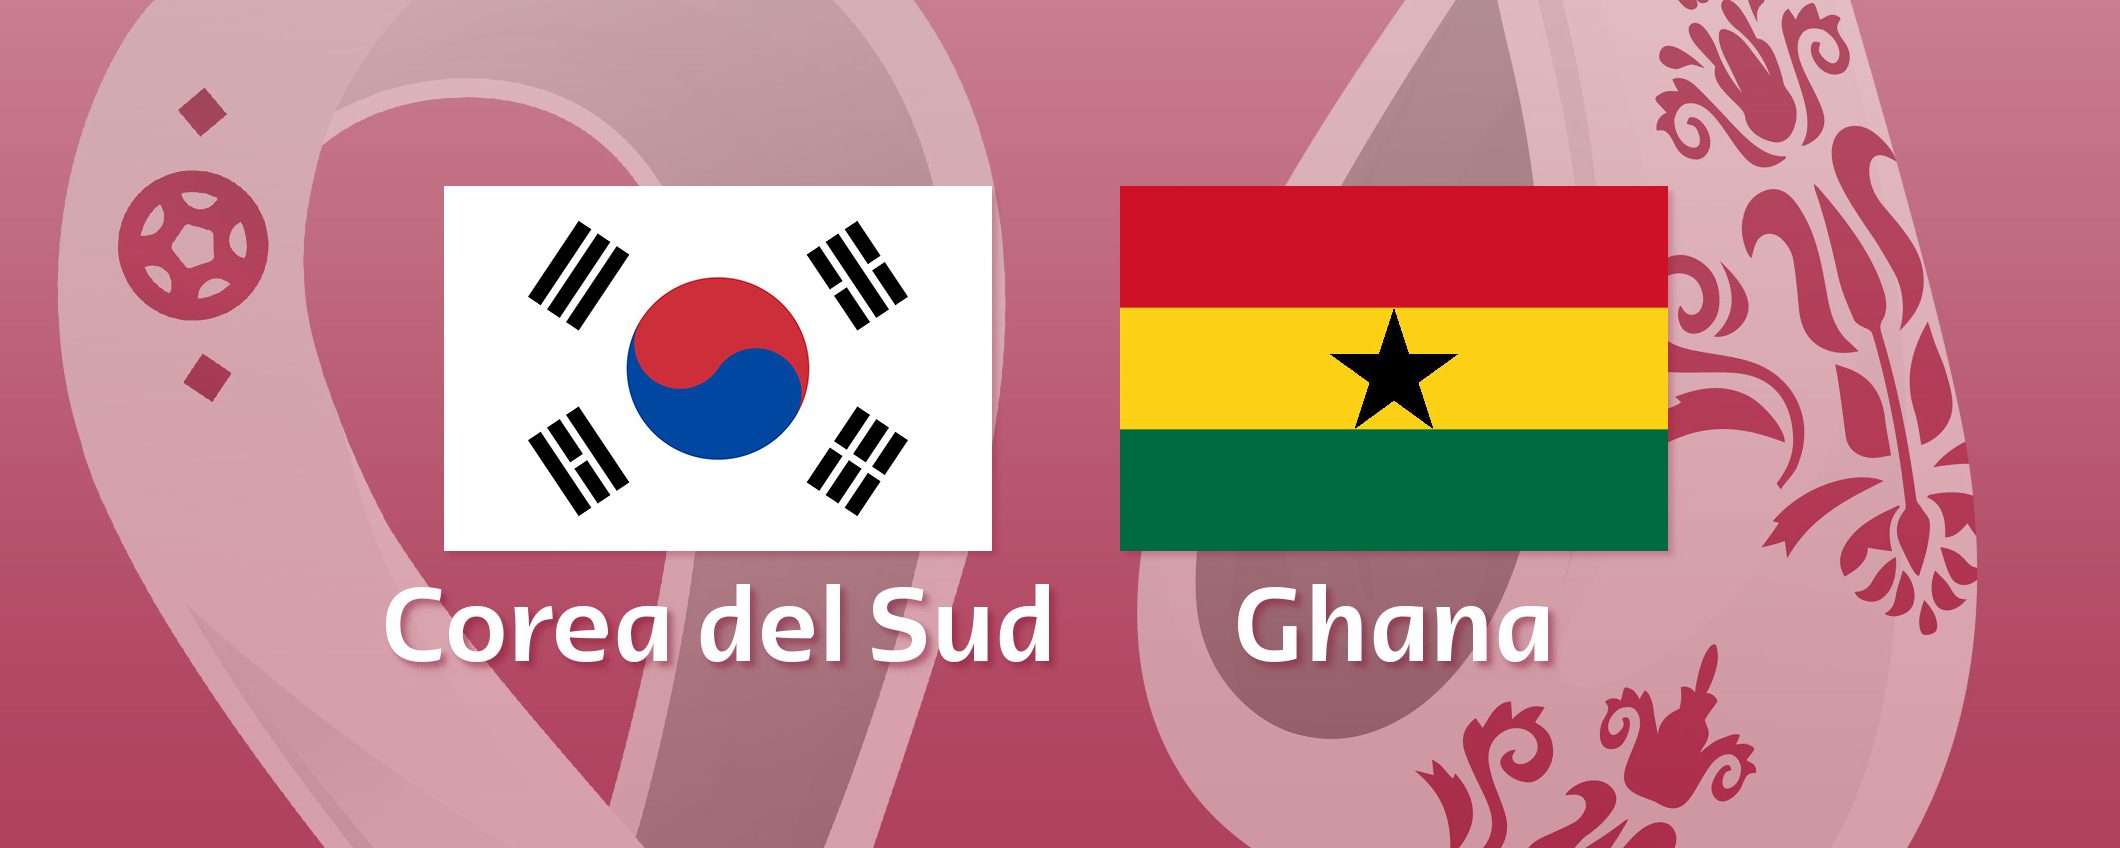 Come vedere Corea del Sud-Ghana in streaming